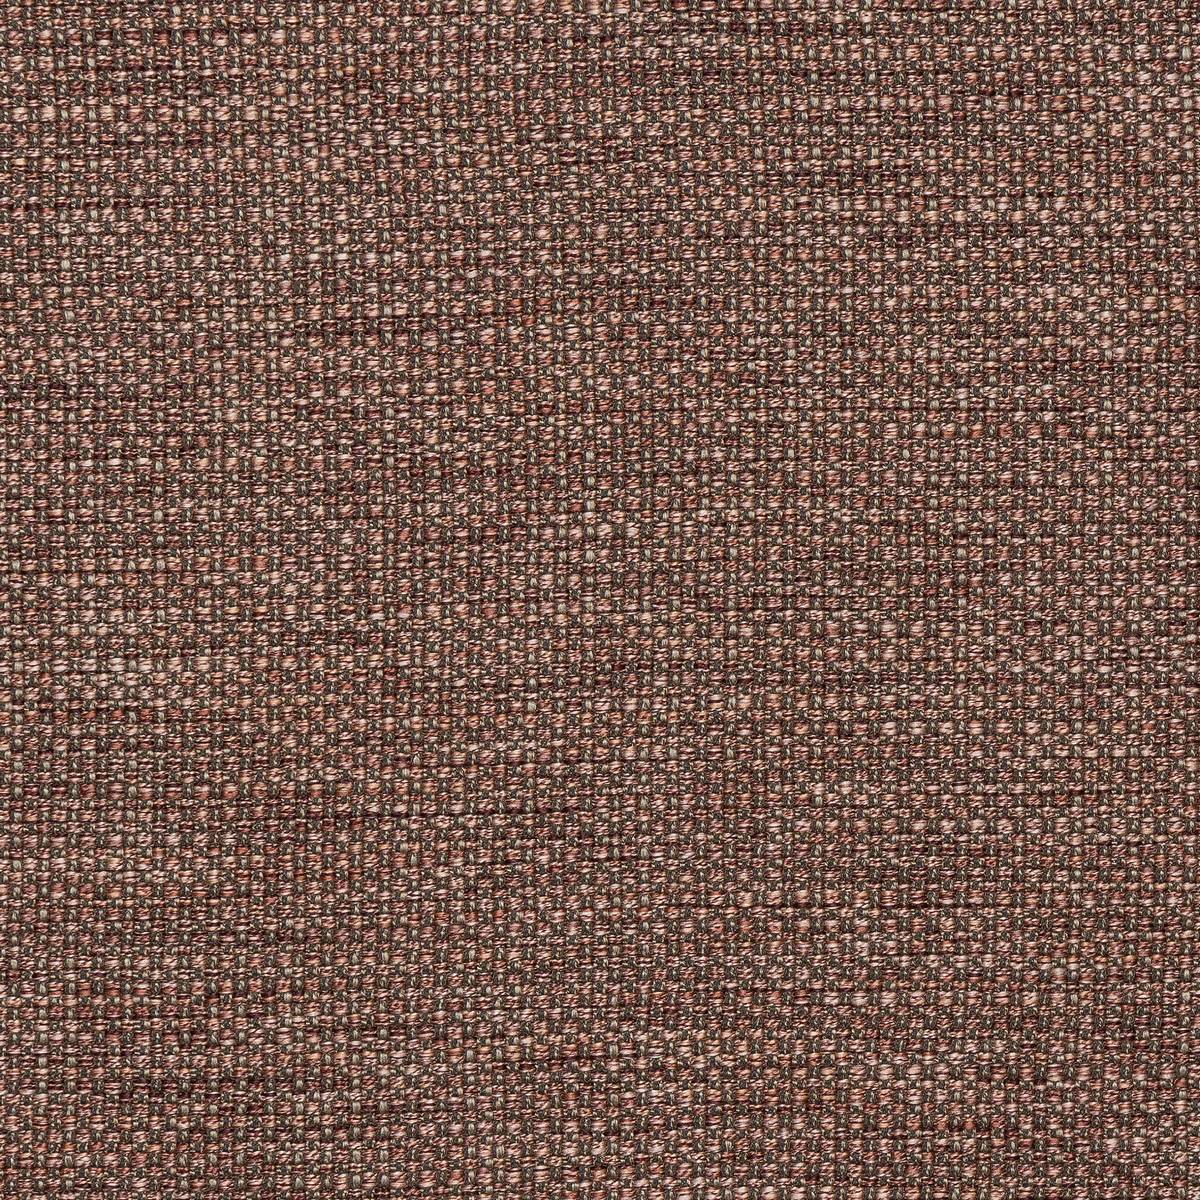 Sparta Blush Fabric by Fryetts